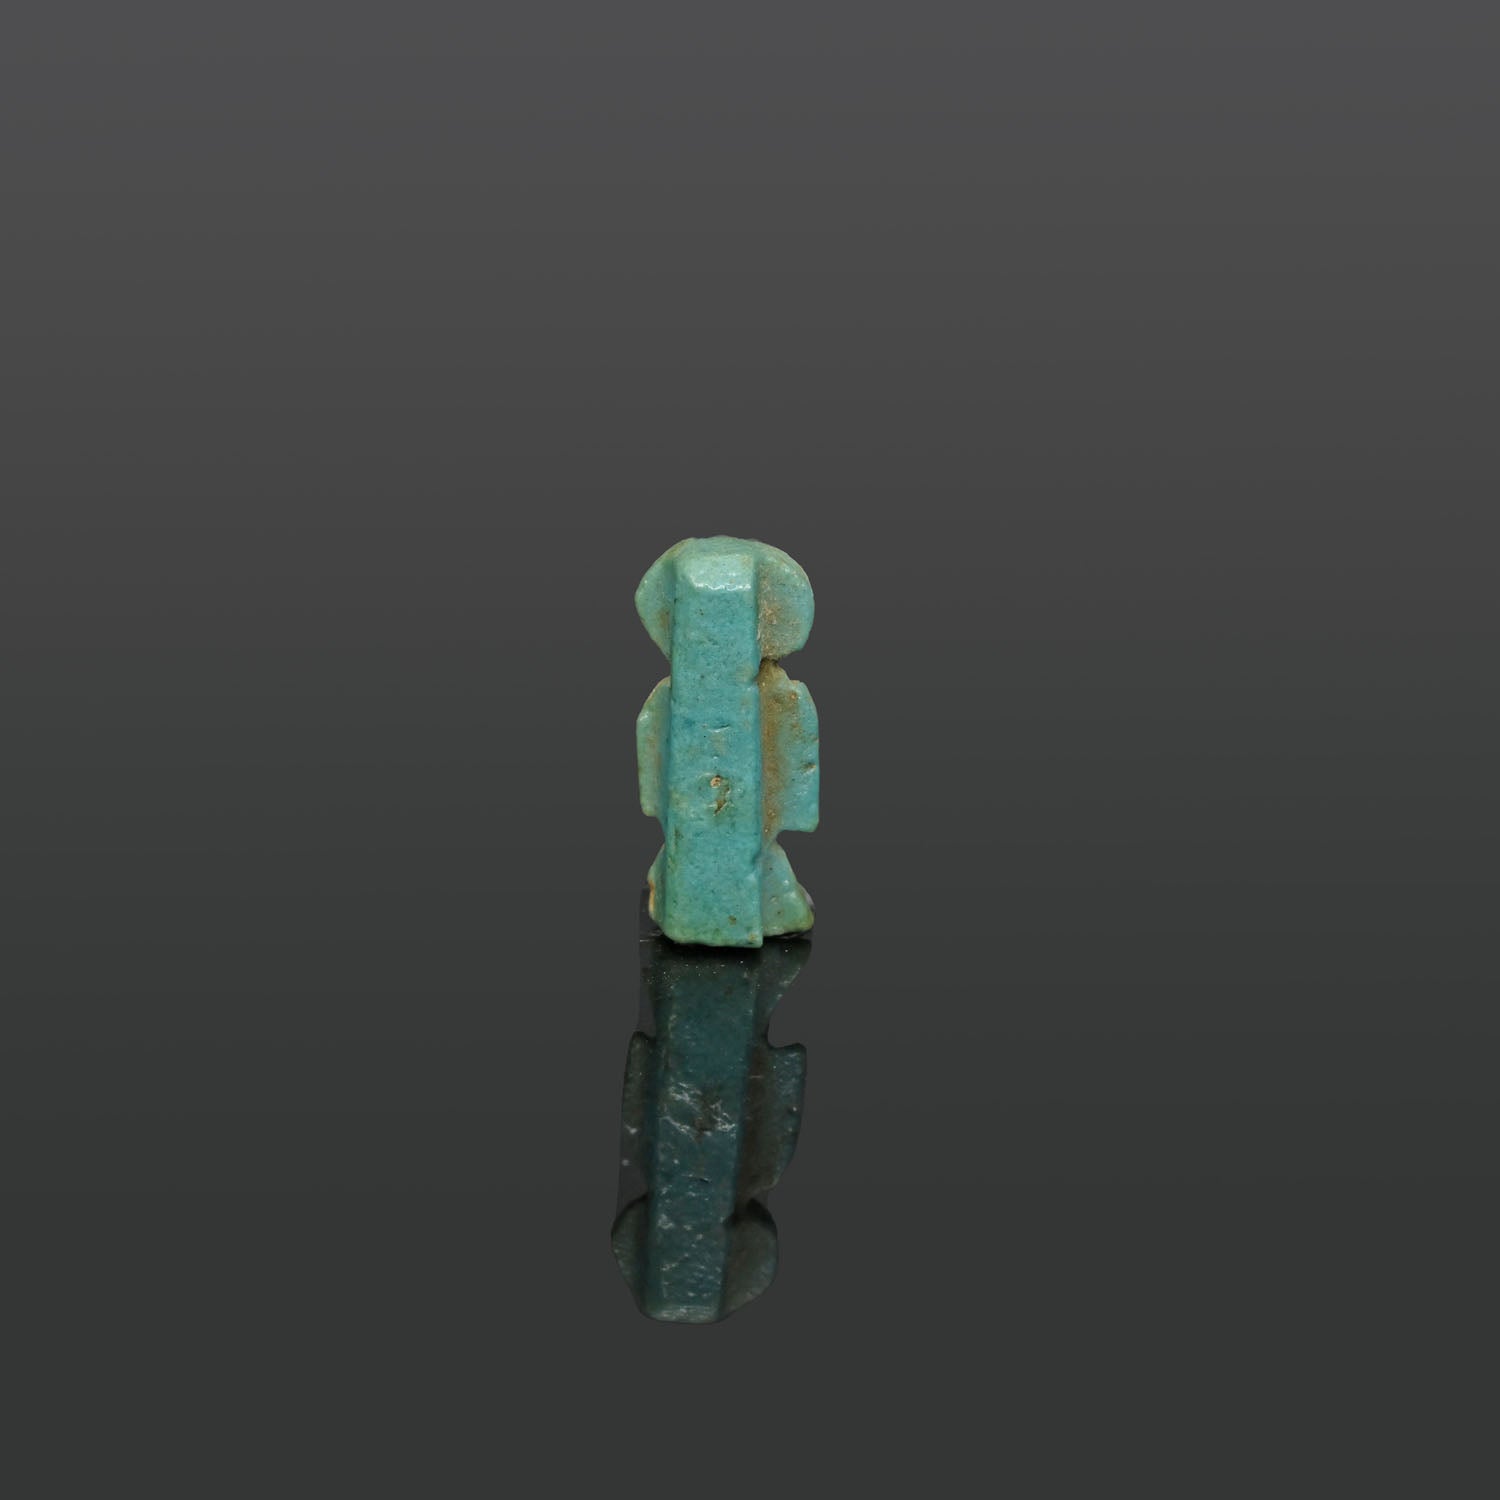 Ein ägyptisches Isis-Knoten-Amulett aus Fayence, Spätzeit, ca. 664 - 332 v. Chr